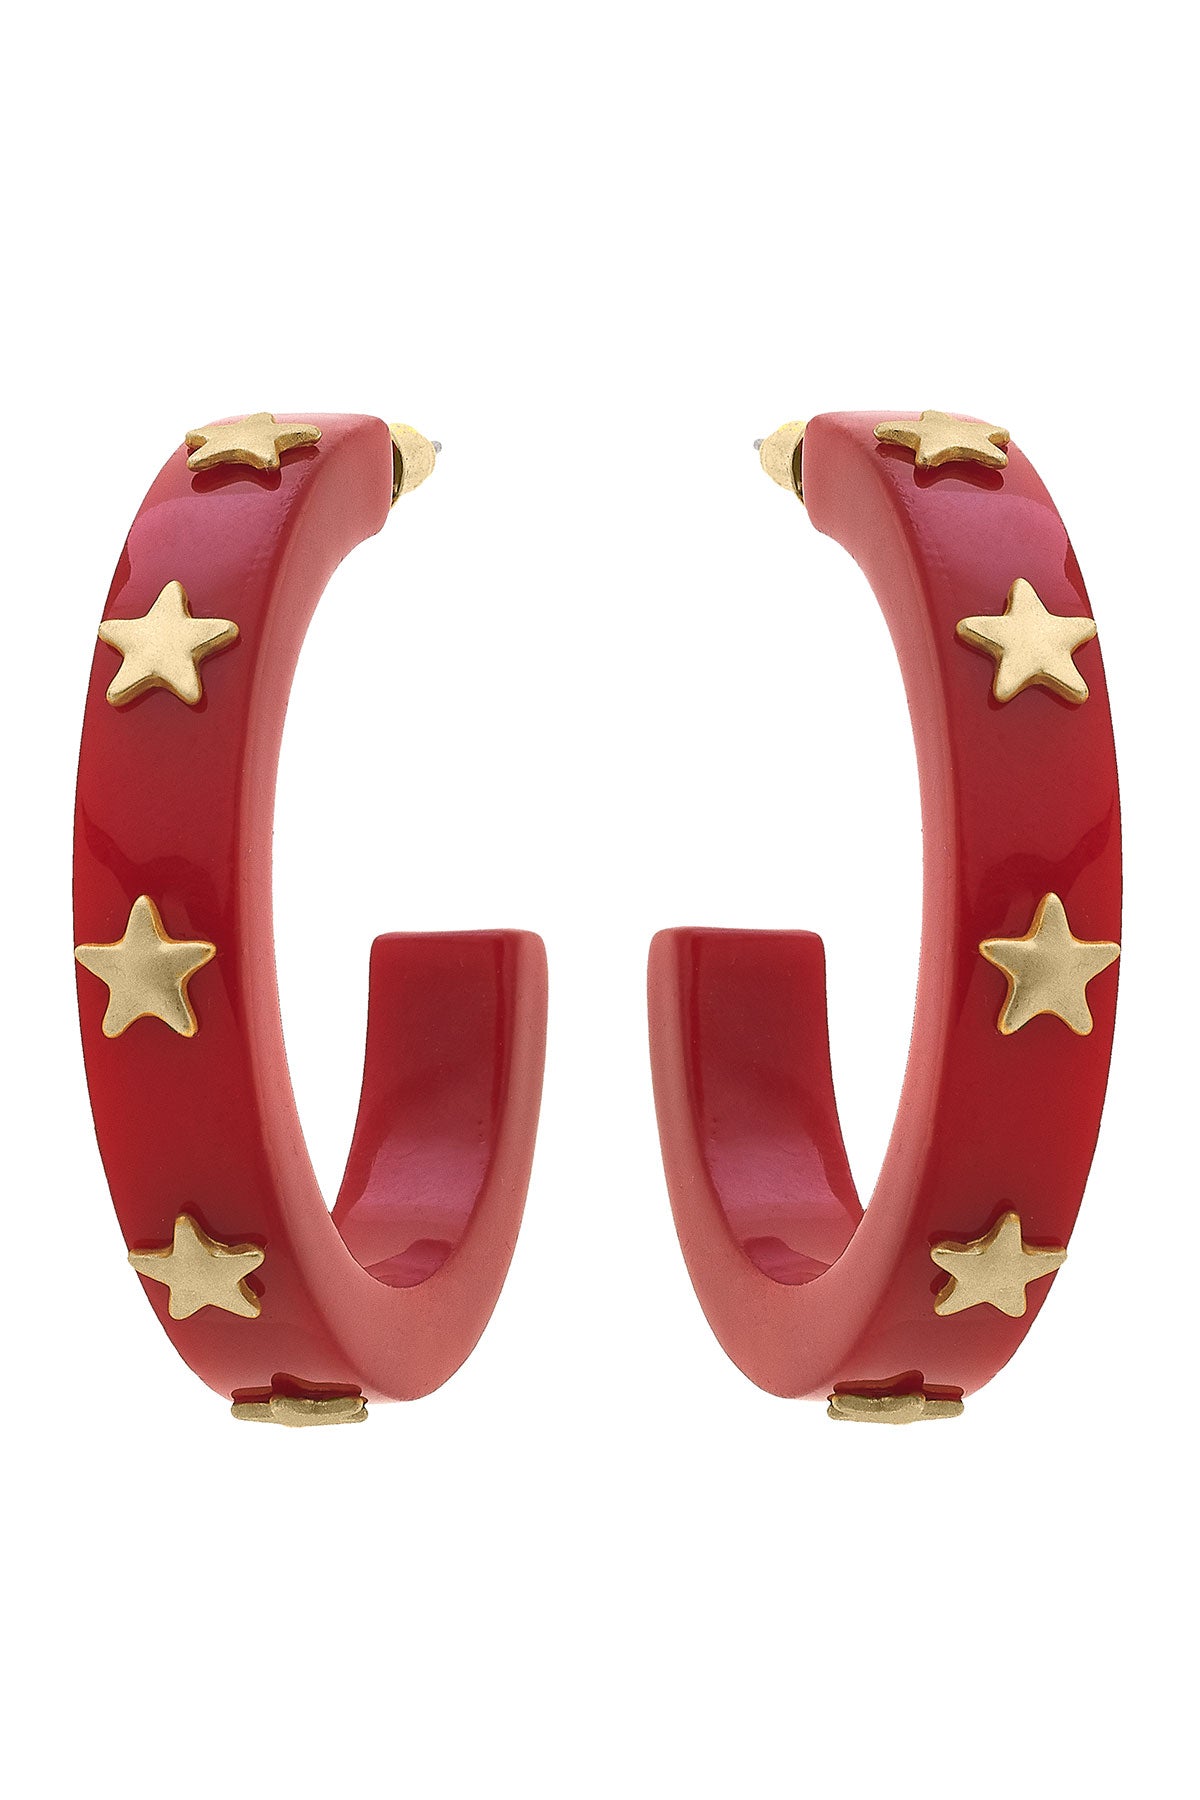 Liberty Star Resin Hoop Earrings in Red